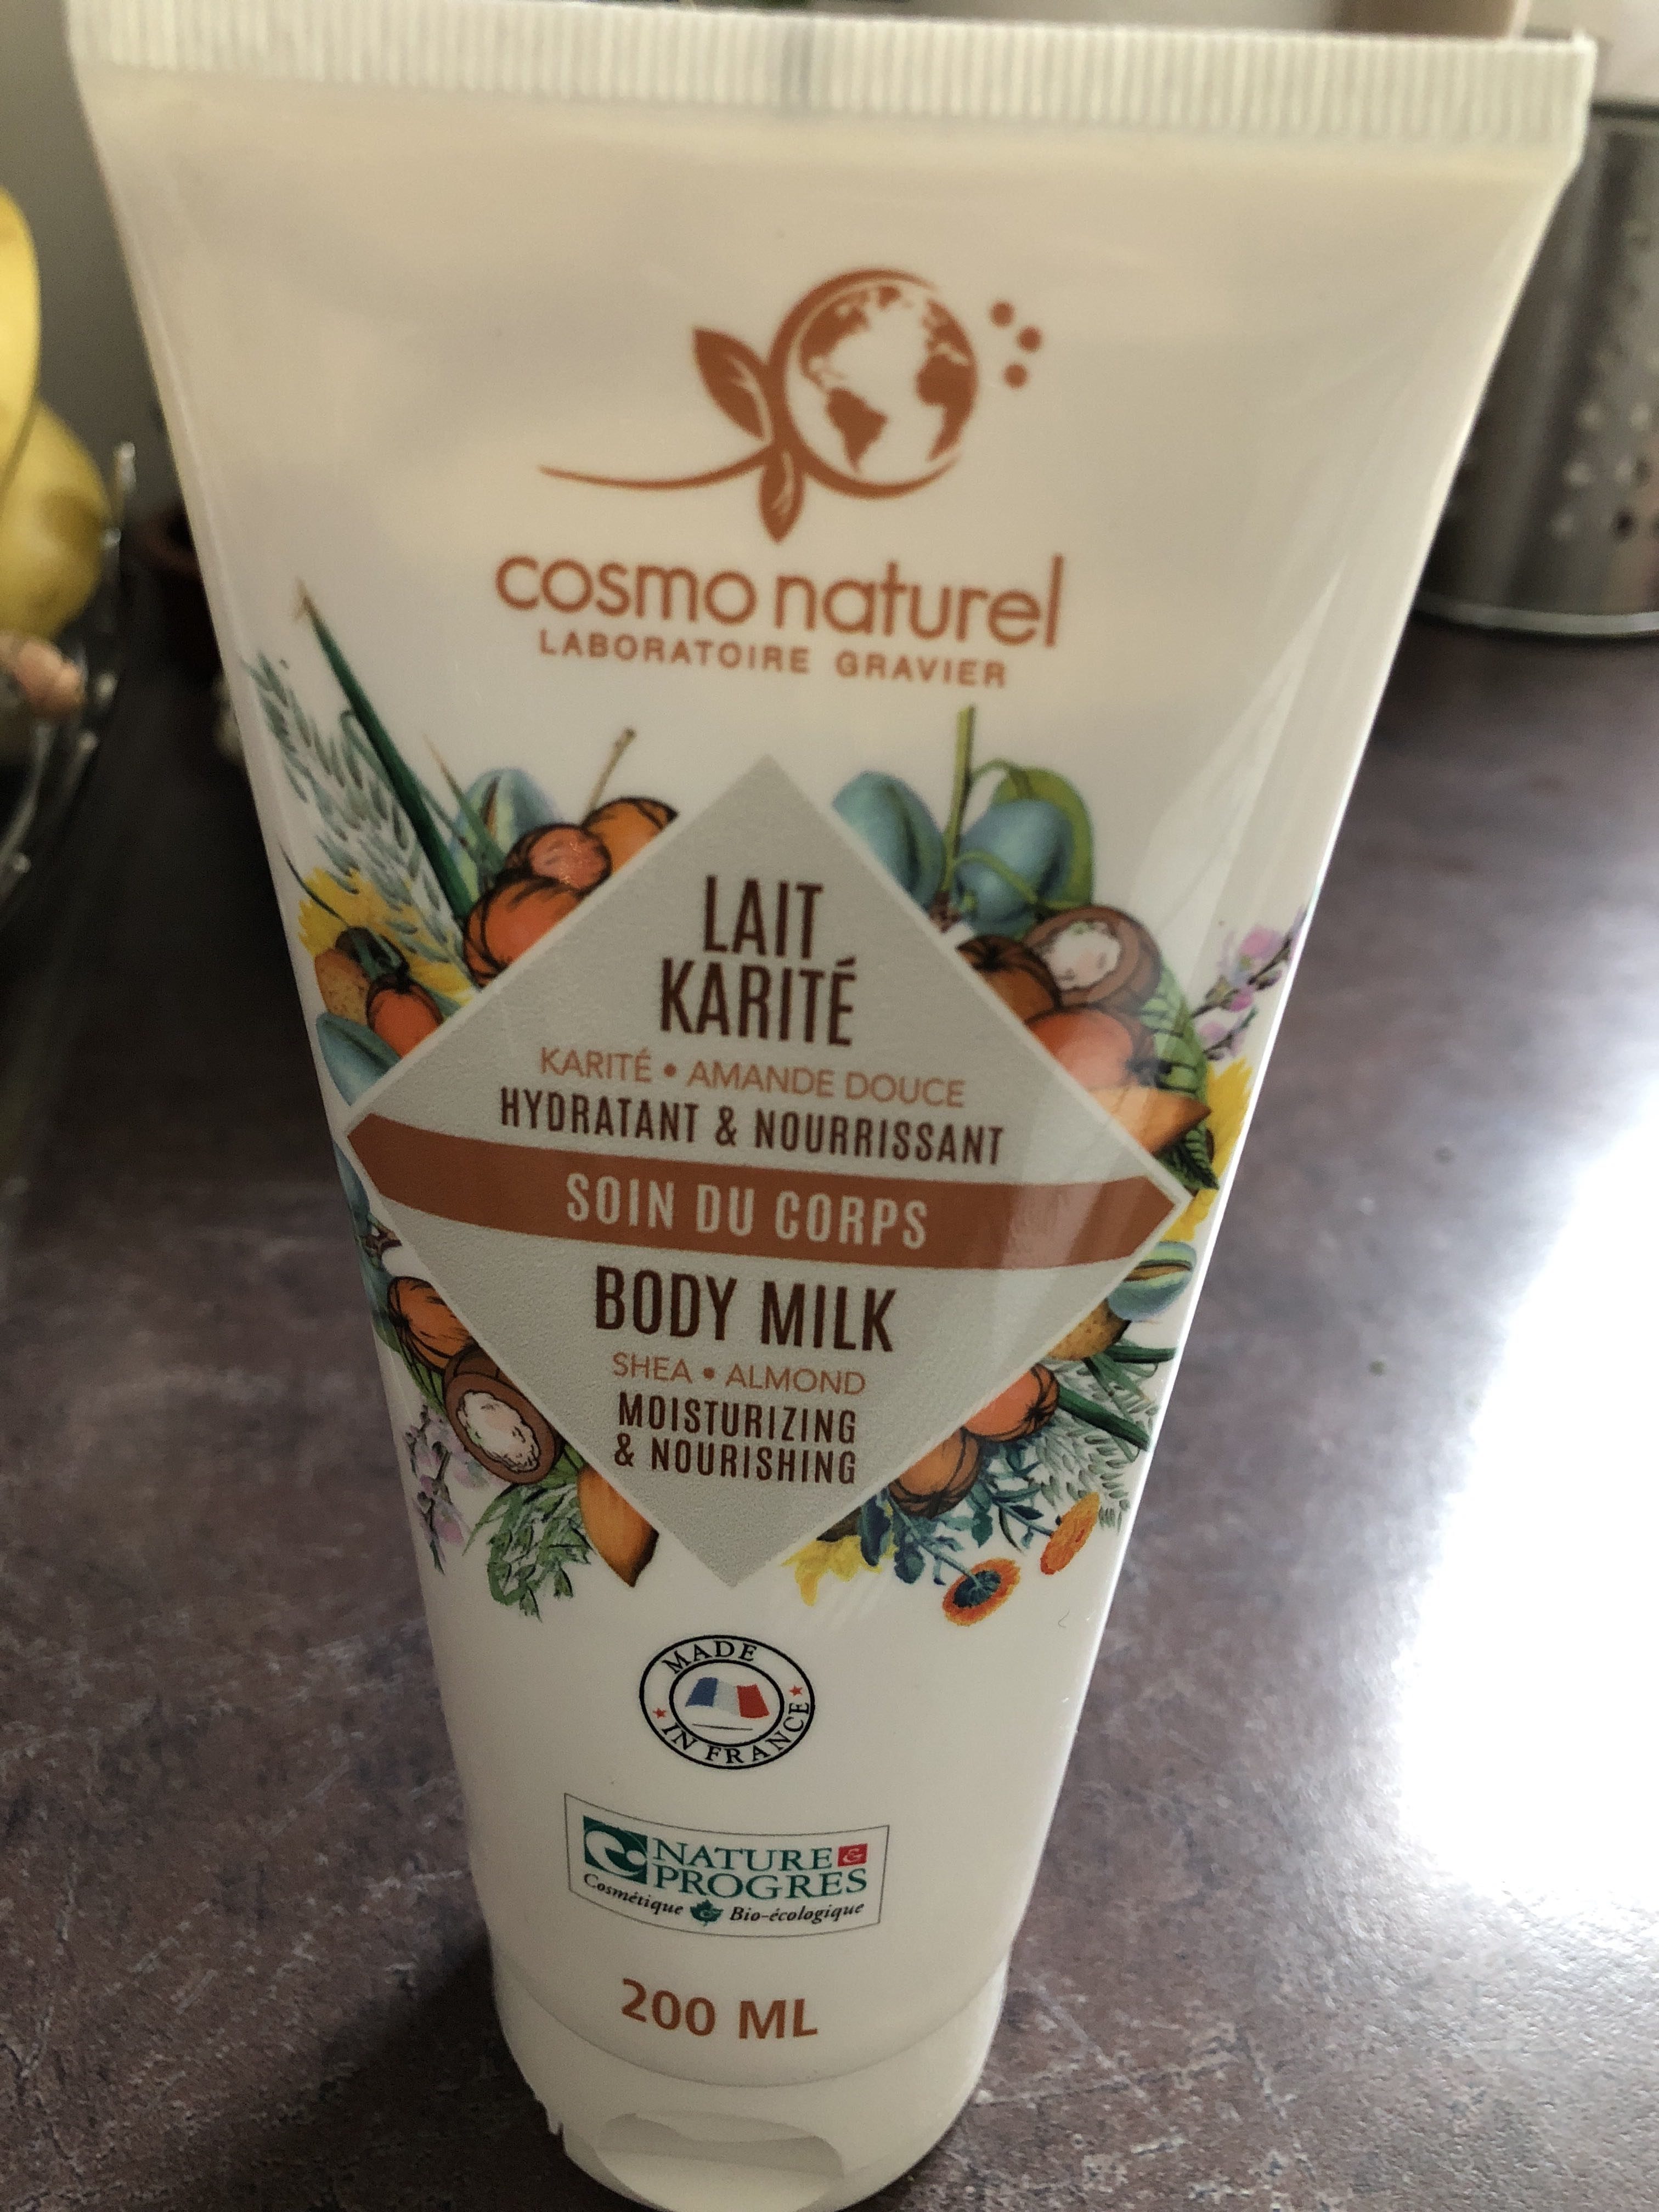 Lait karité body milk - Produto - fr